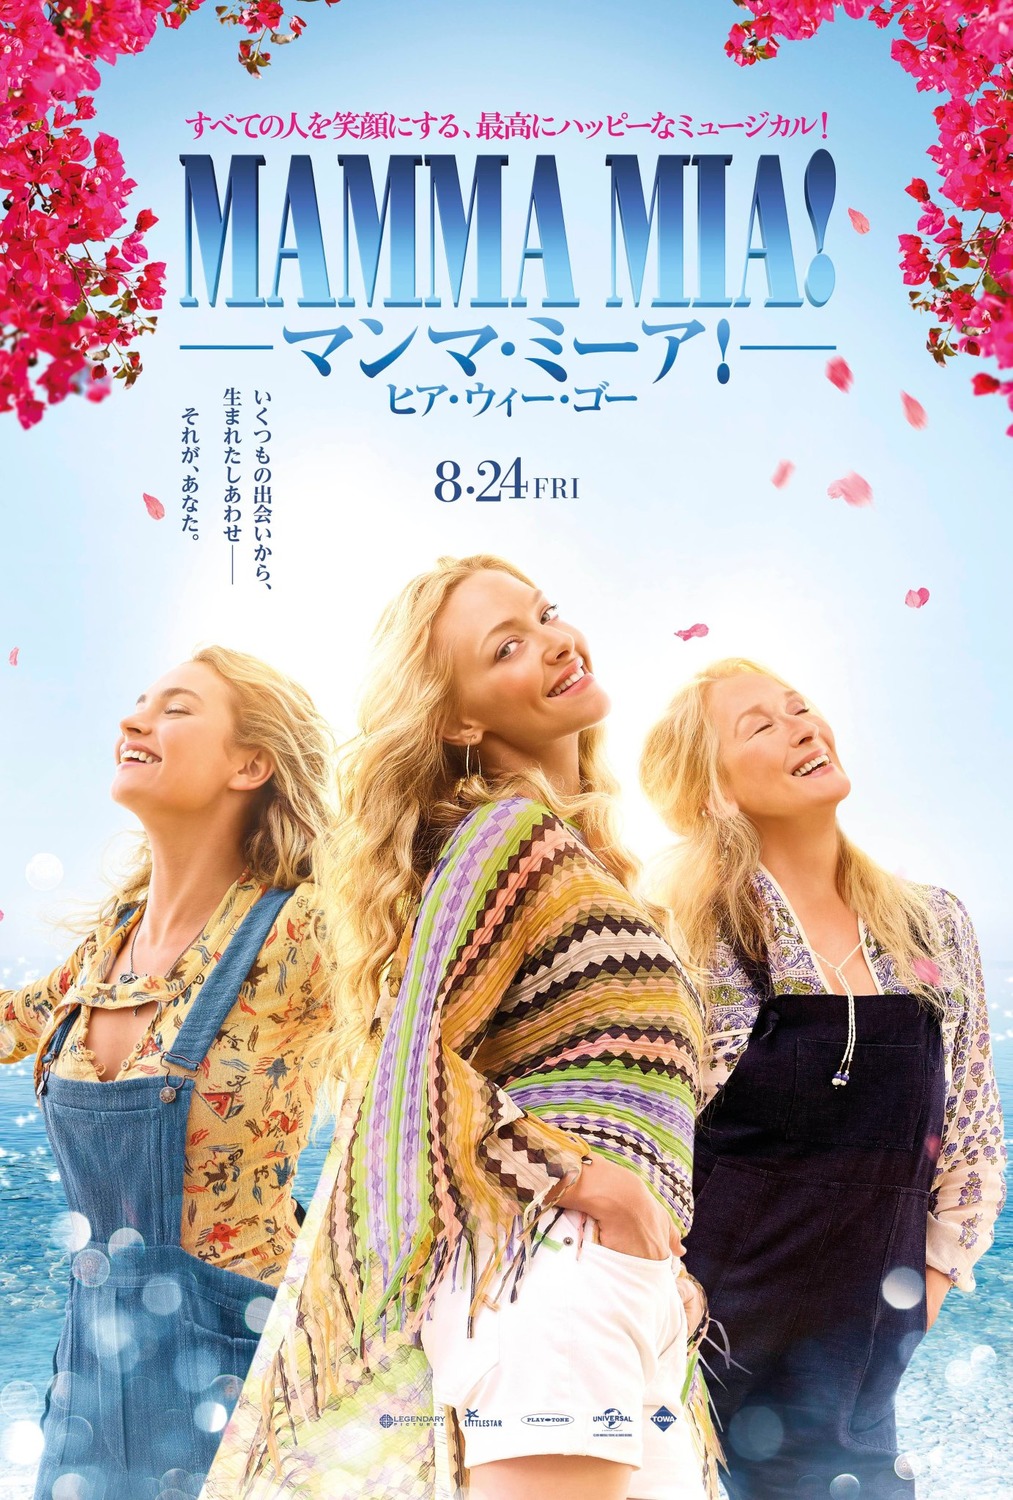 Постер - Mamma Mia! 2: 1013x1500 / 463.81 Кб